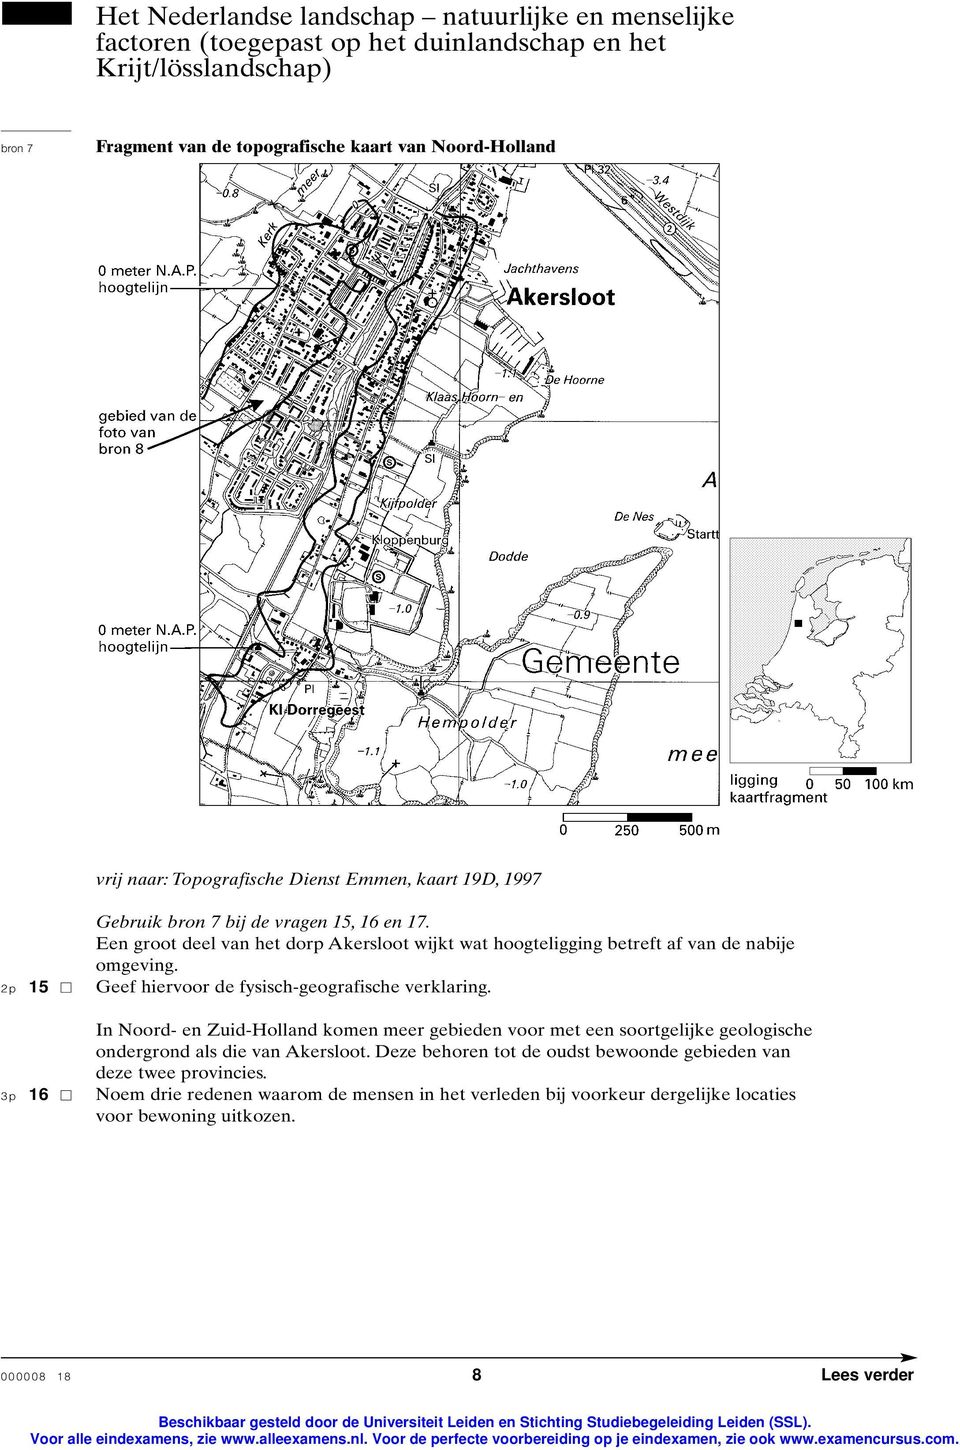 2p 15 Geef hiervoor de fysisch-geografische verklaring. In Noord- en Zuid-Holland komen meer gebieden voor met een soortgelijke geologische ondergrond als die van Akersloot.